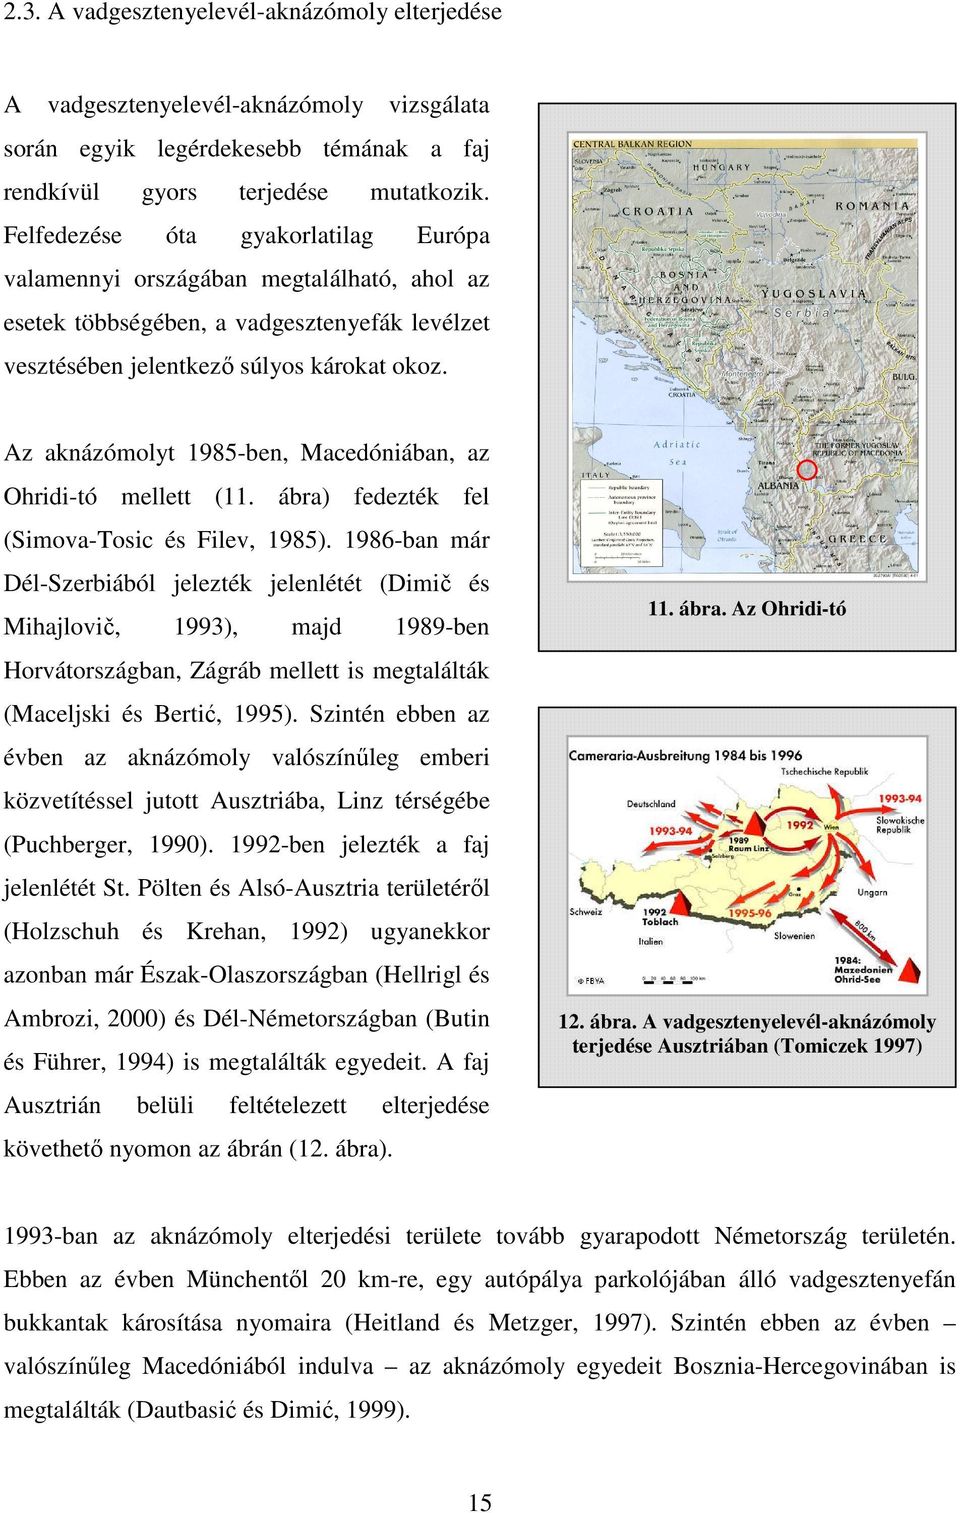 Az aknázómolyt 1985-ben, Macedóniában, az Ohridi-tó mellett (11. ábra) fedezték fel (Simova-Tosic és Filev, 1985).